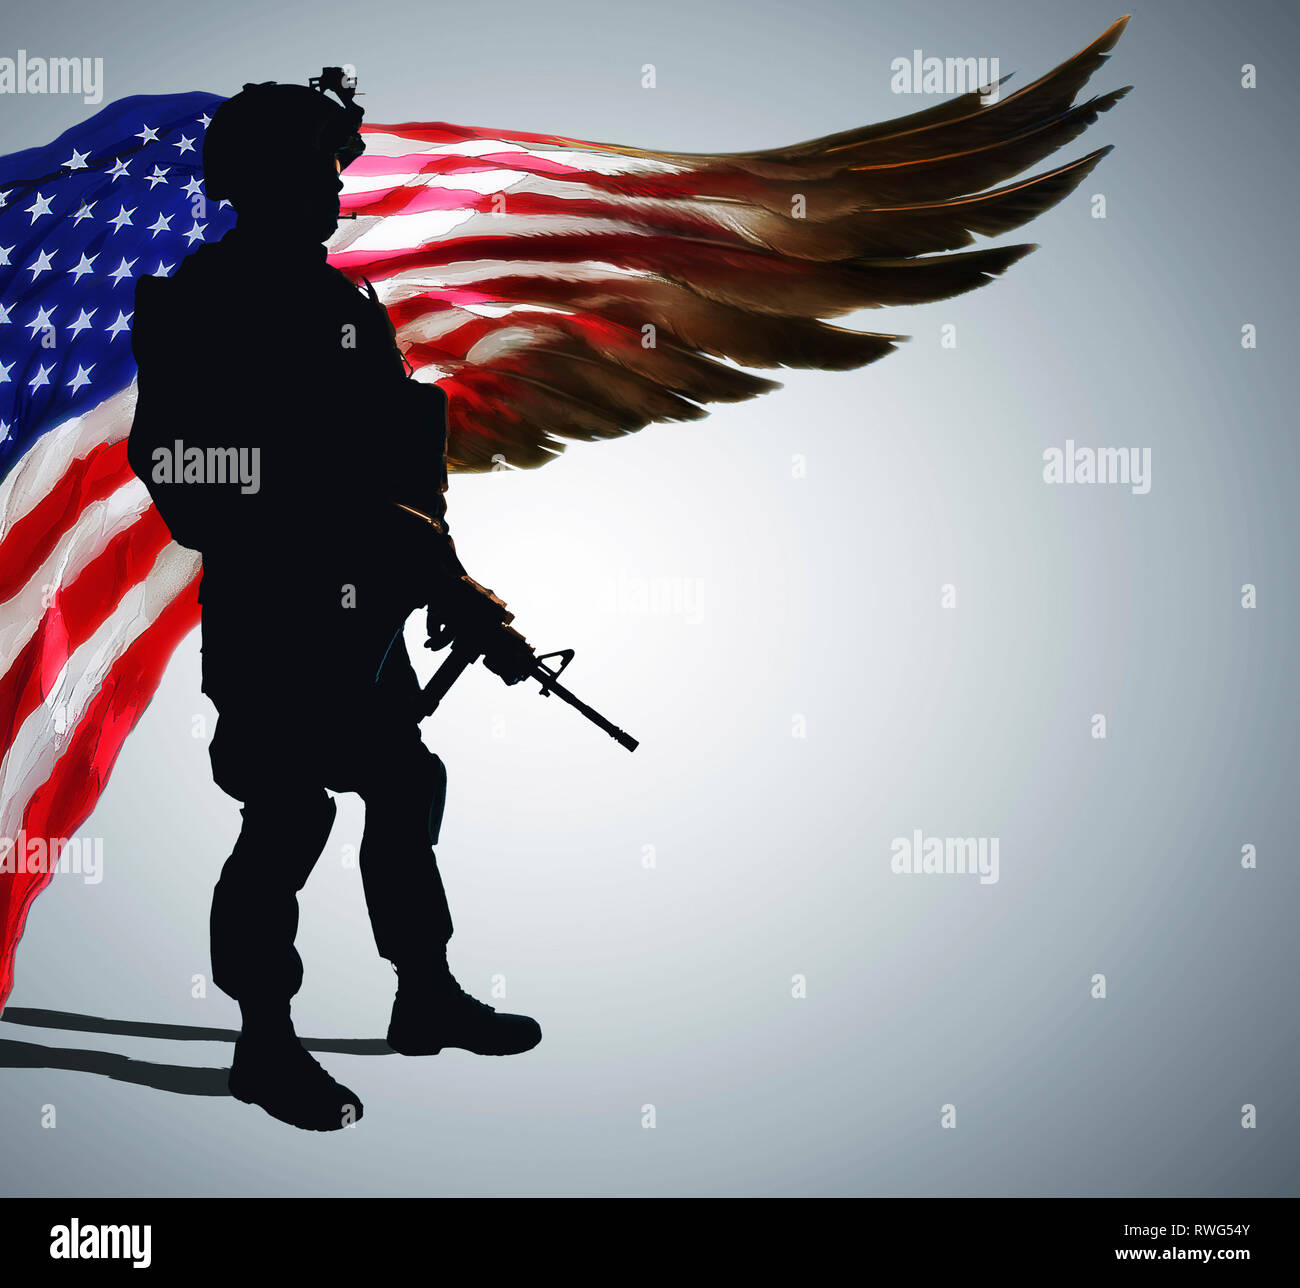 Silhouette der Armee Soldat vor stilisierte US-Flagge in Form von riesigen Flügel. Stolz und Dankbarkeit für Jahre der engagierten Service. Stockfoto